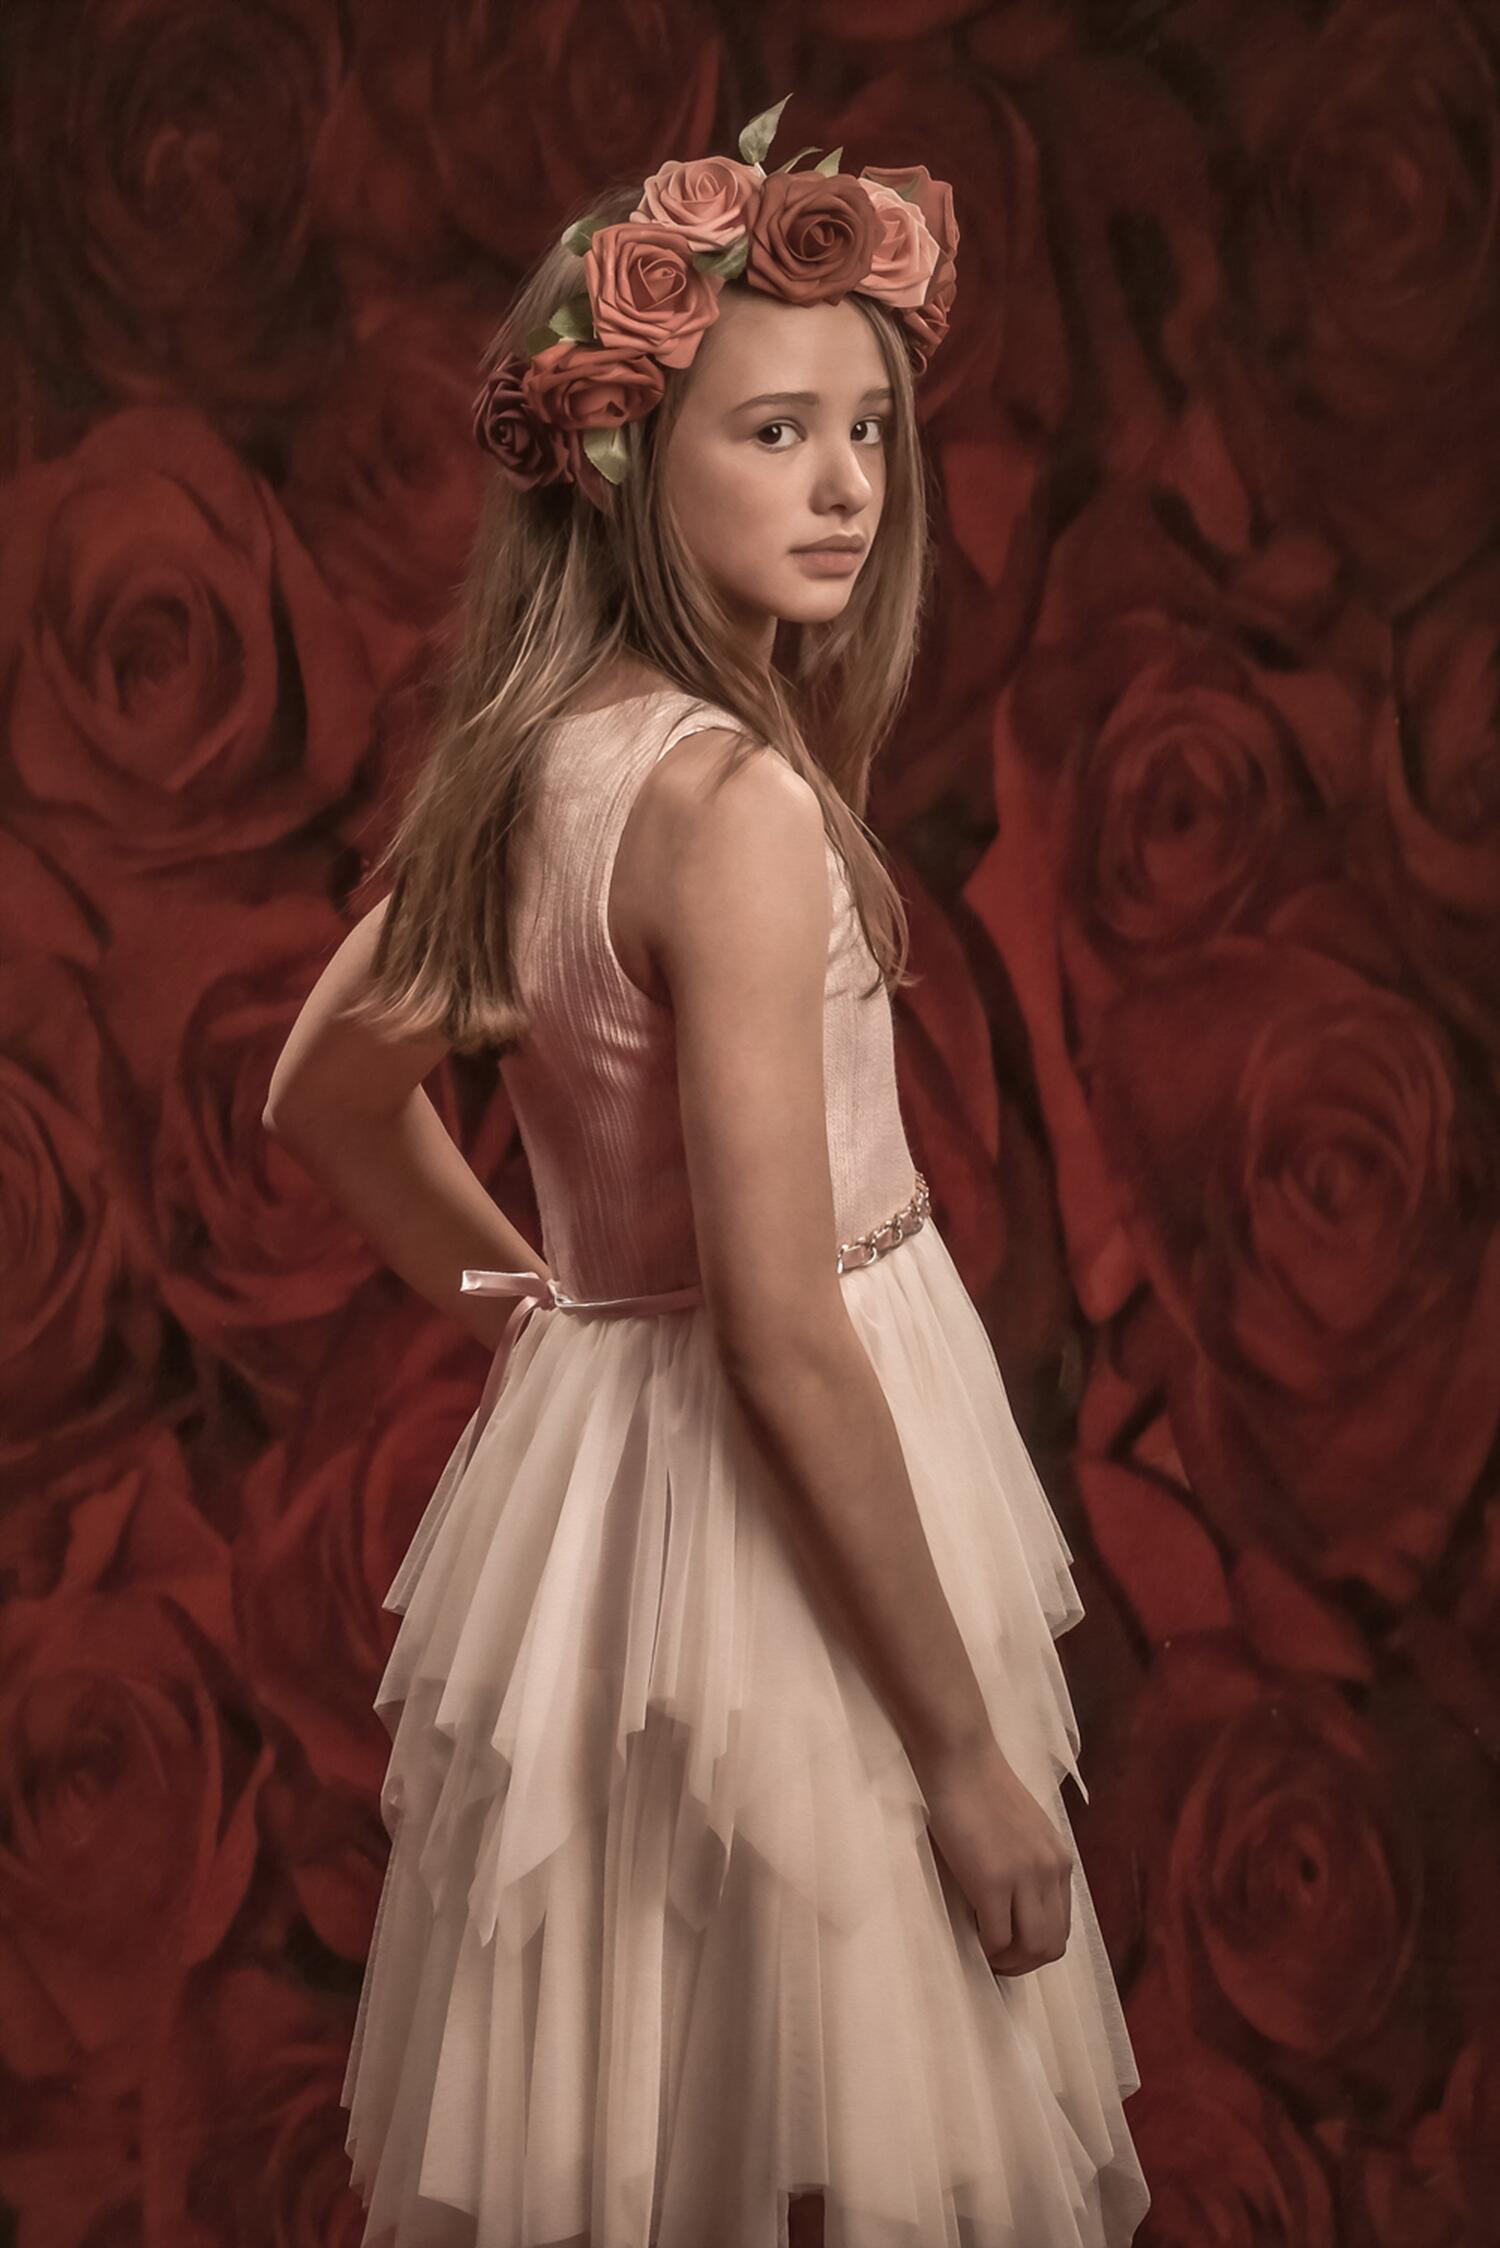 Kate Red Roses Valentinstag Blumen Fotografie Hintergrund